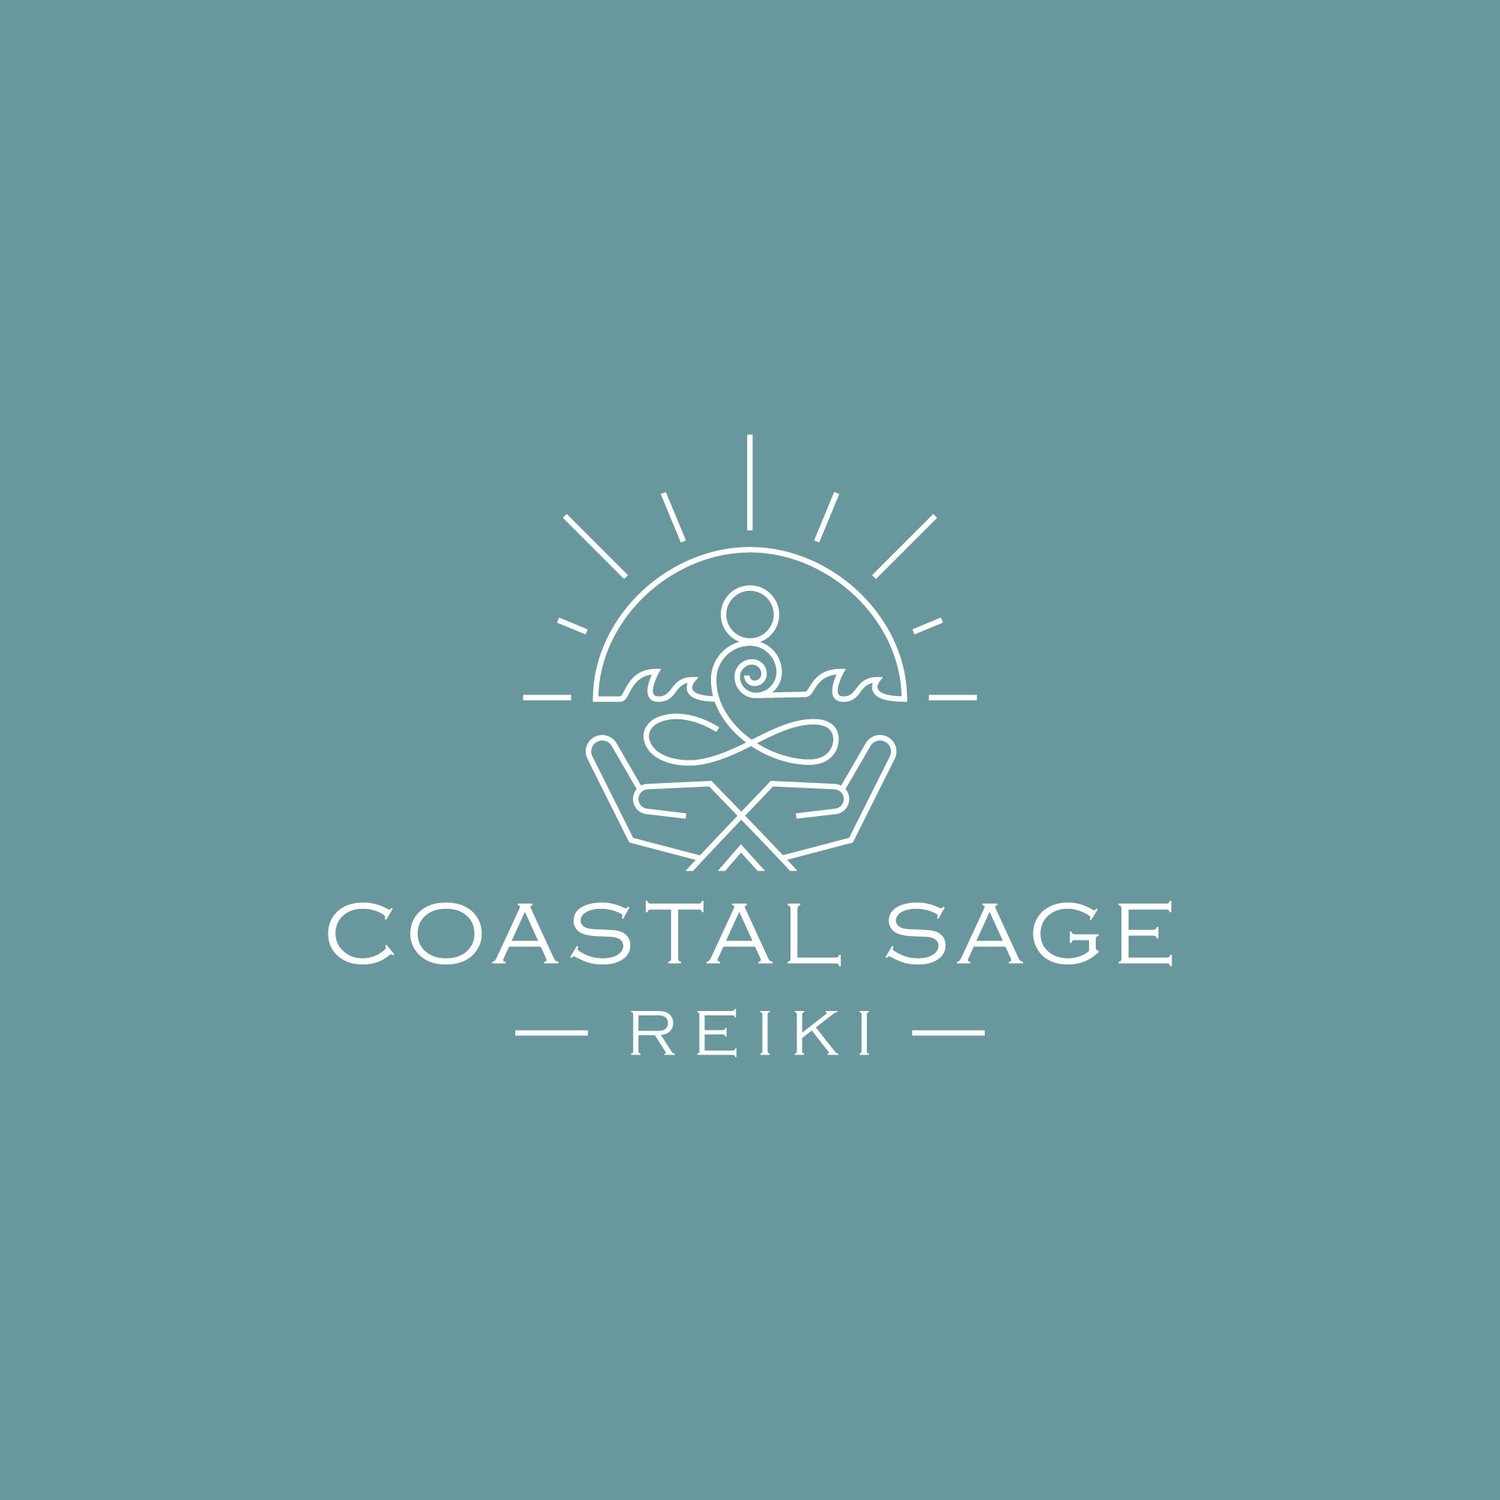 Coastal Sage Reiki